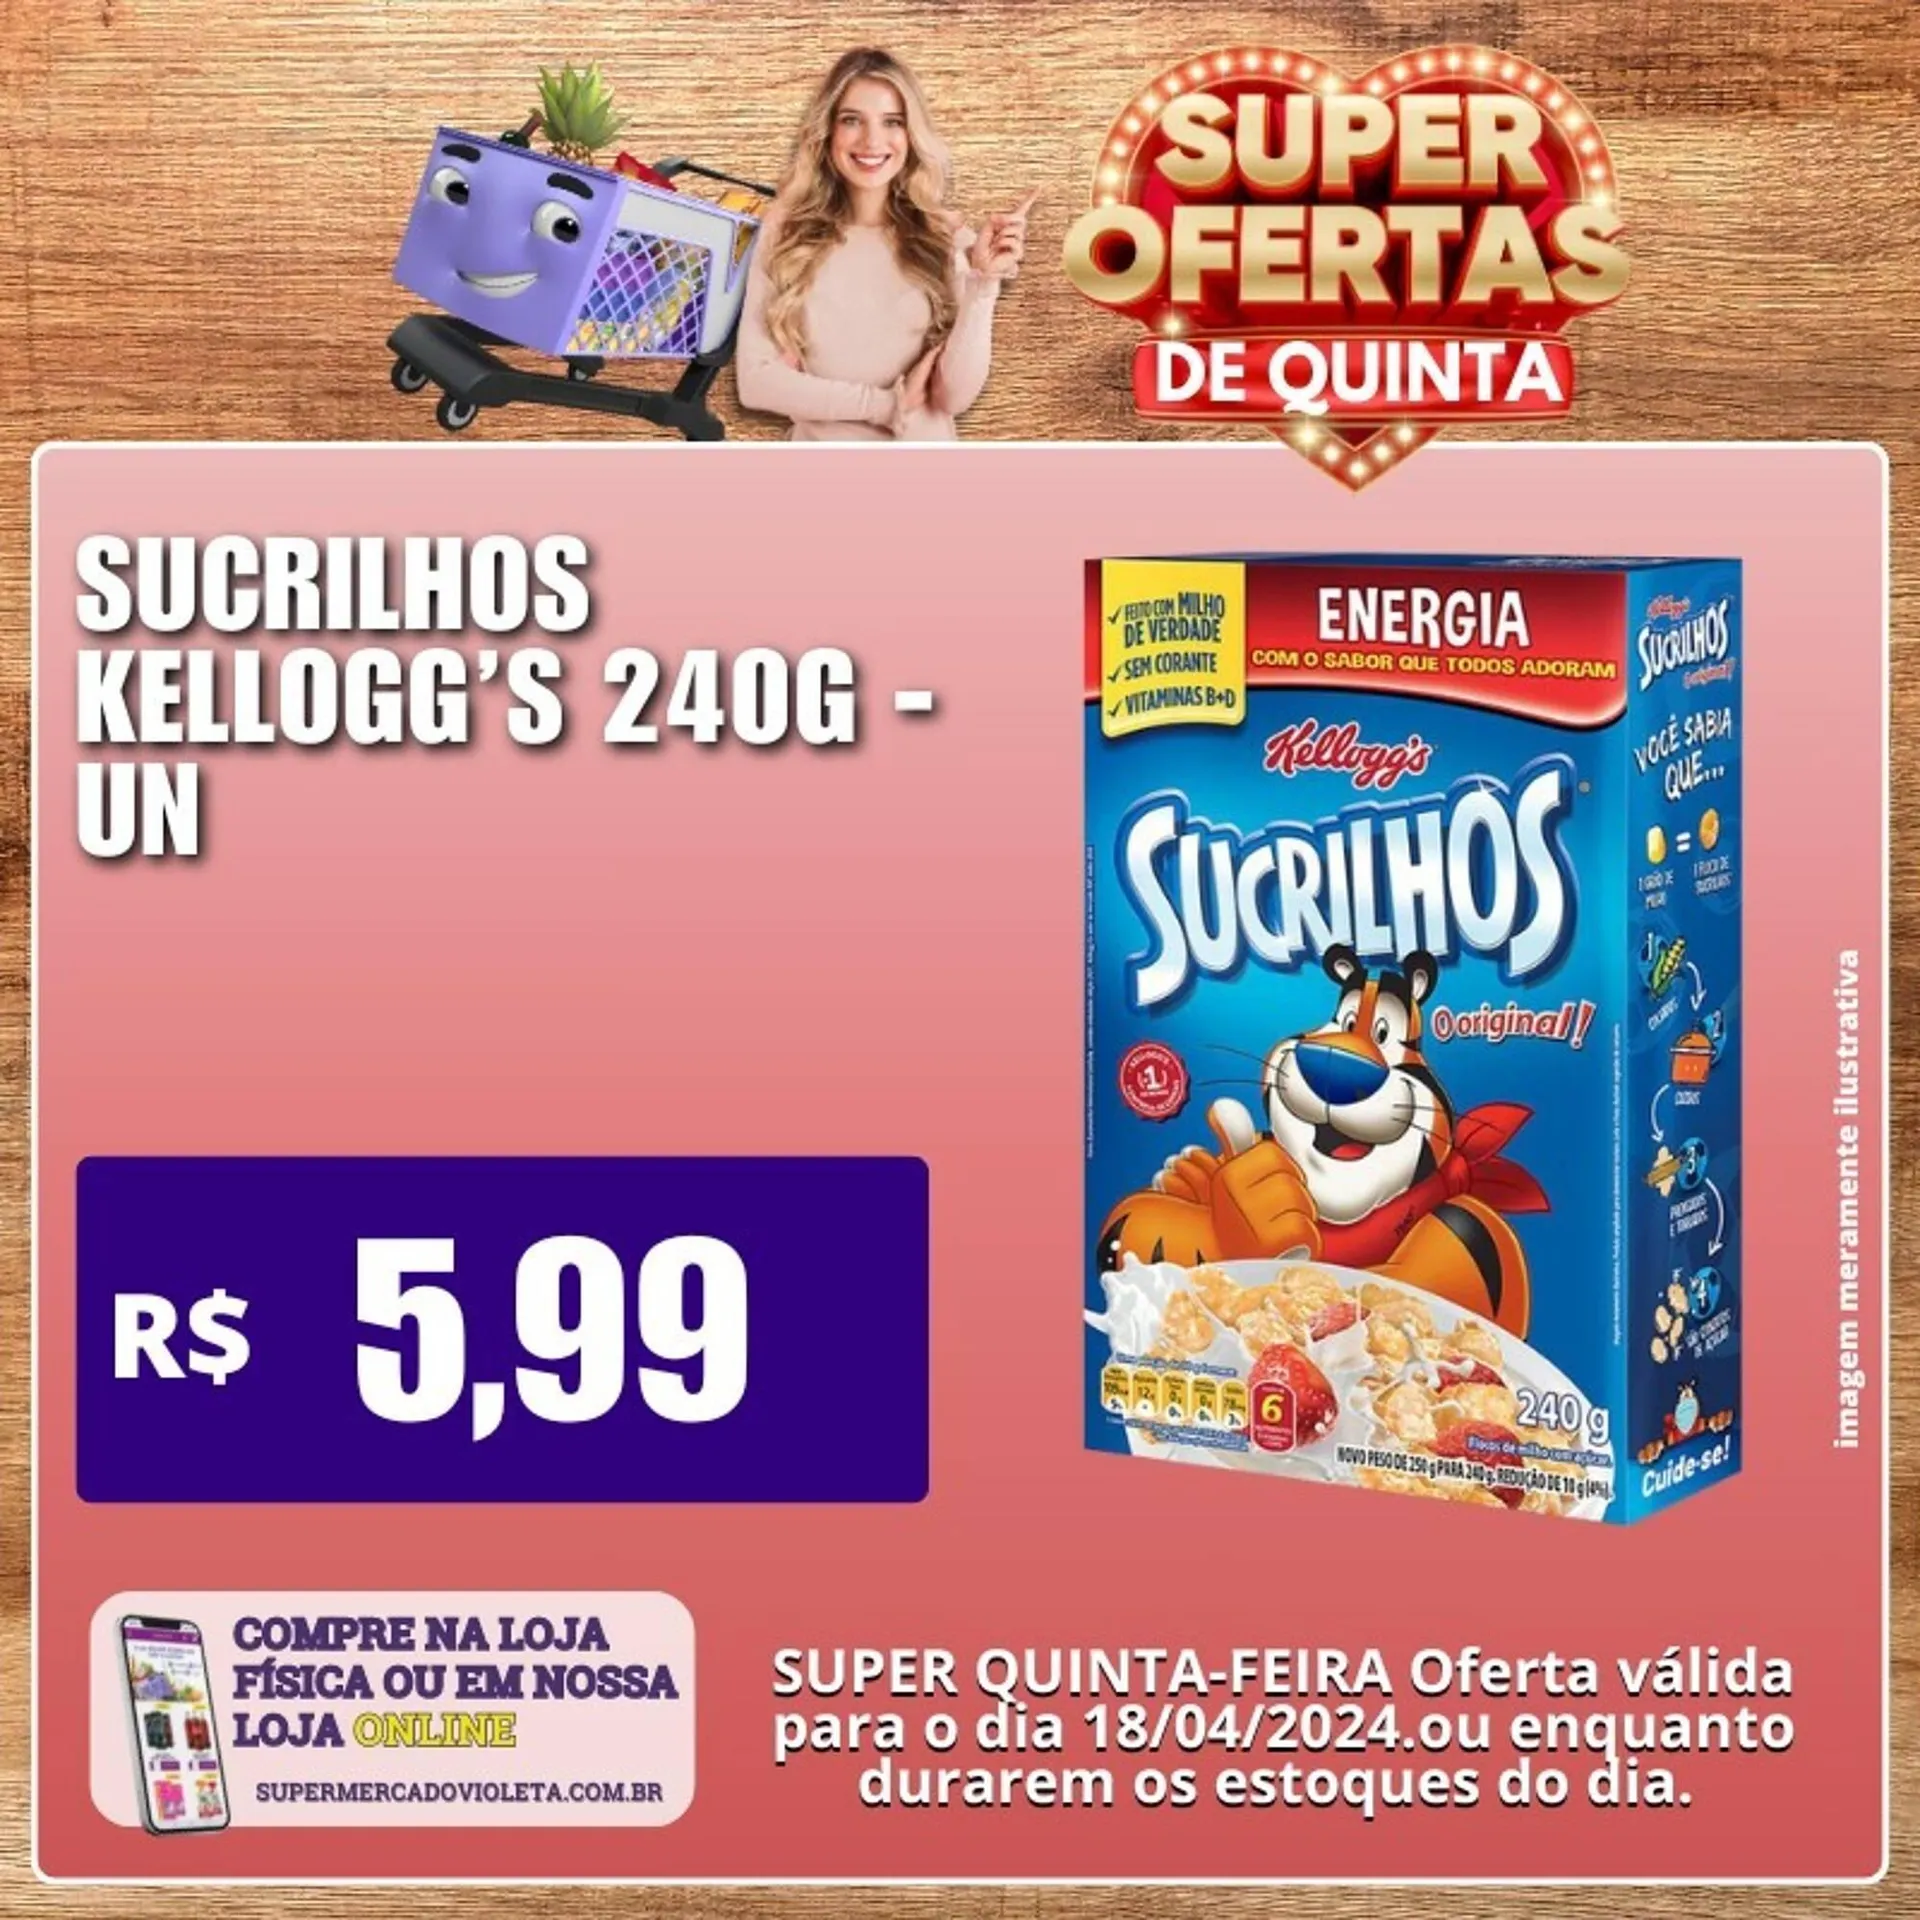 Catálogo Violeta Supermercados - 2